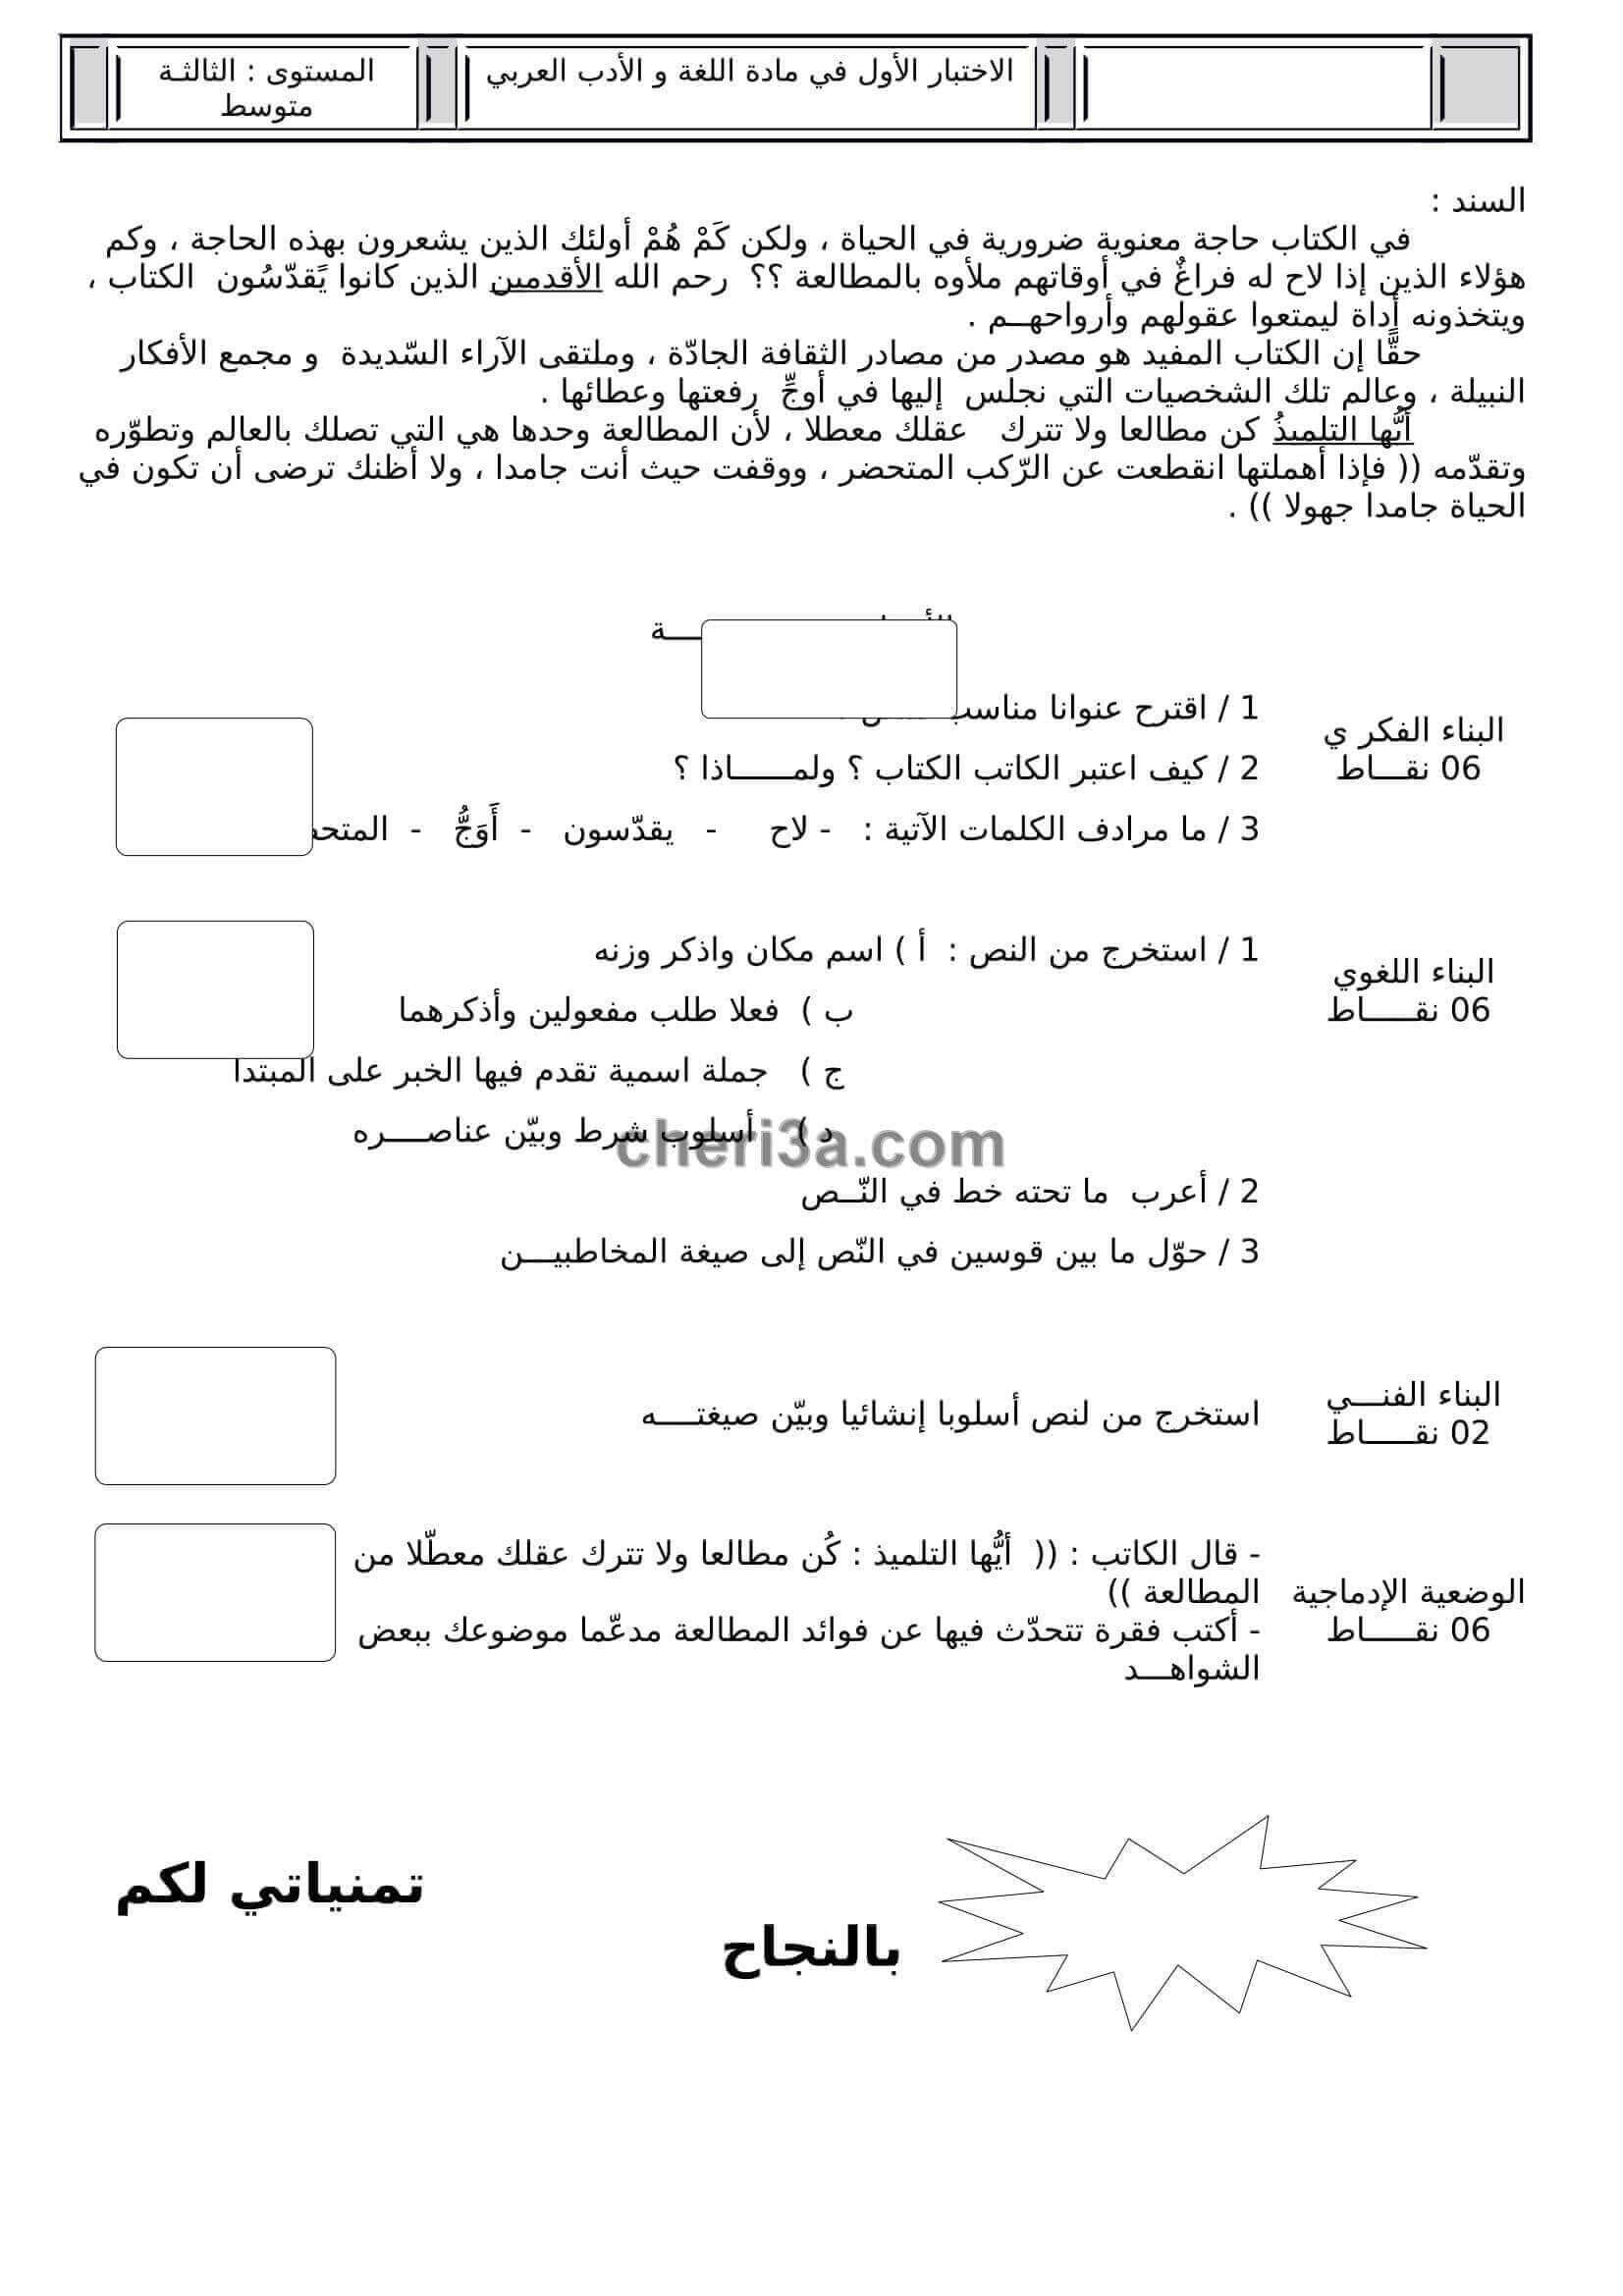 اختبار الفصل الاول للسنة الثالثة متوسط في اللغة العربية النموذج 6